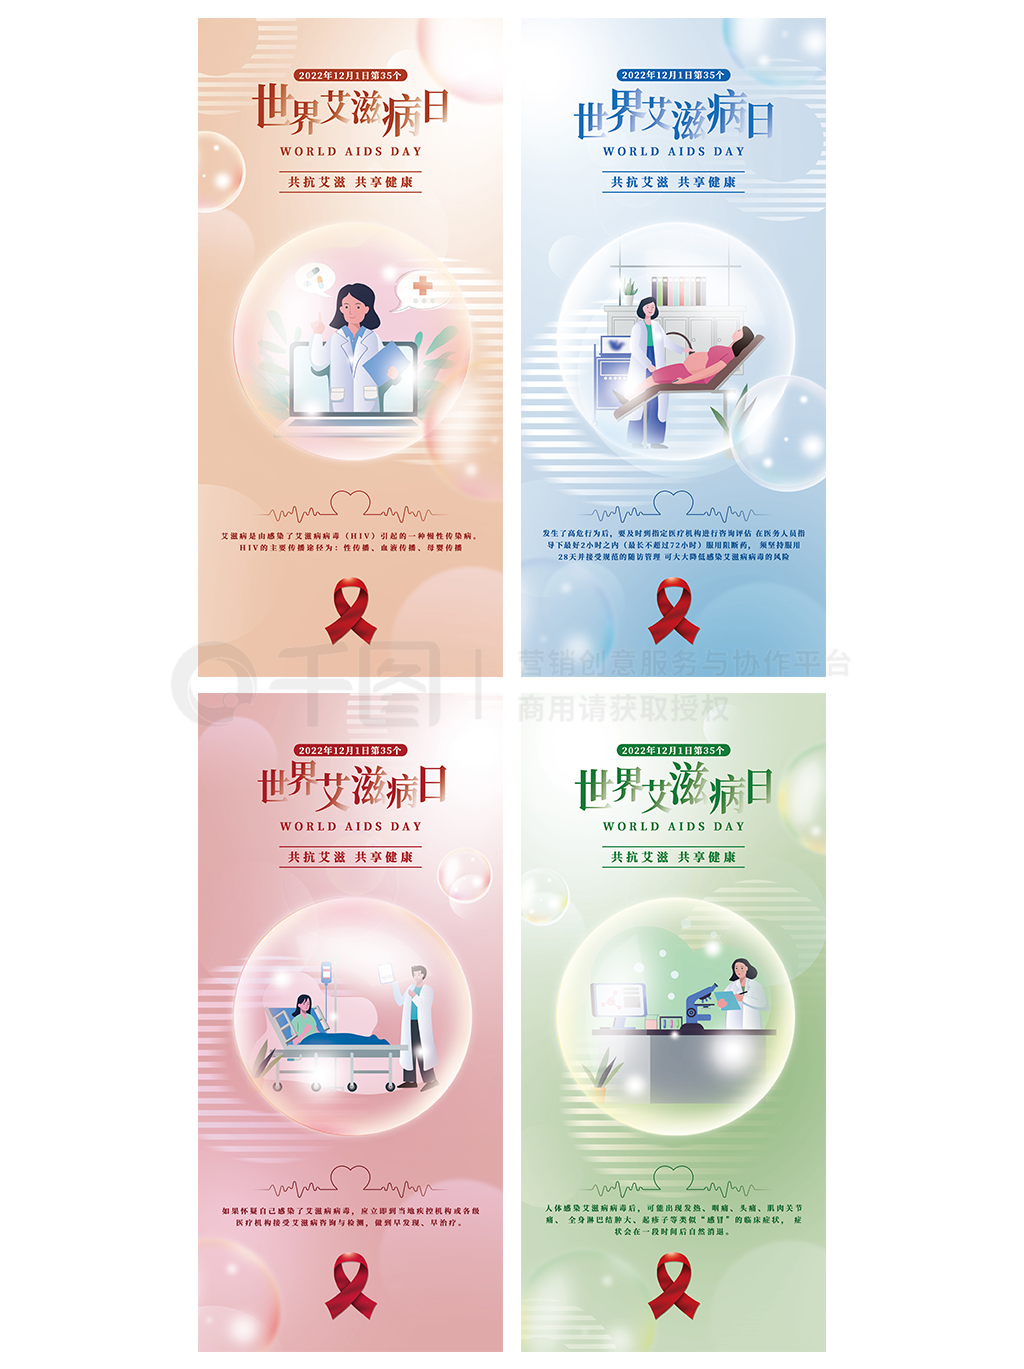 世界艾滋病日丨杭州市开展系列宣传活动！免费咨询检测服务哪里有？请戳